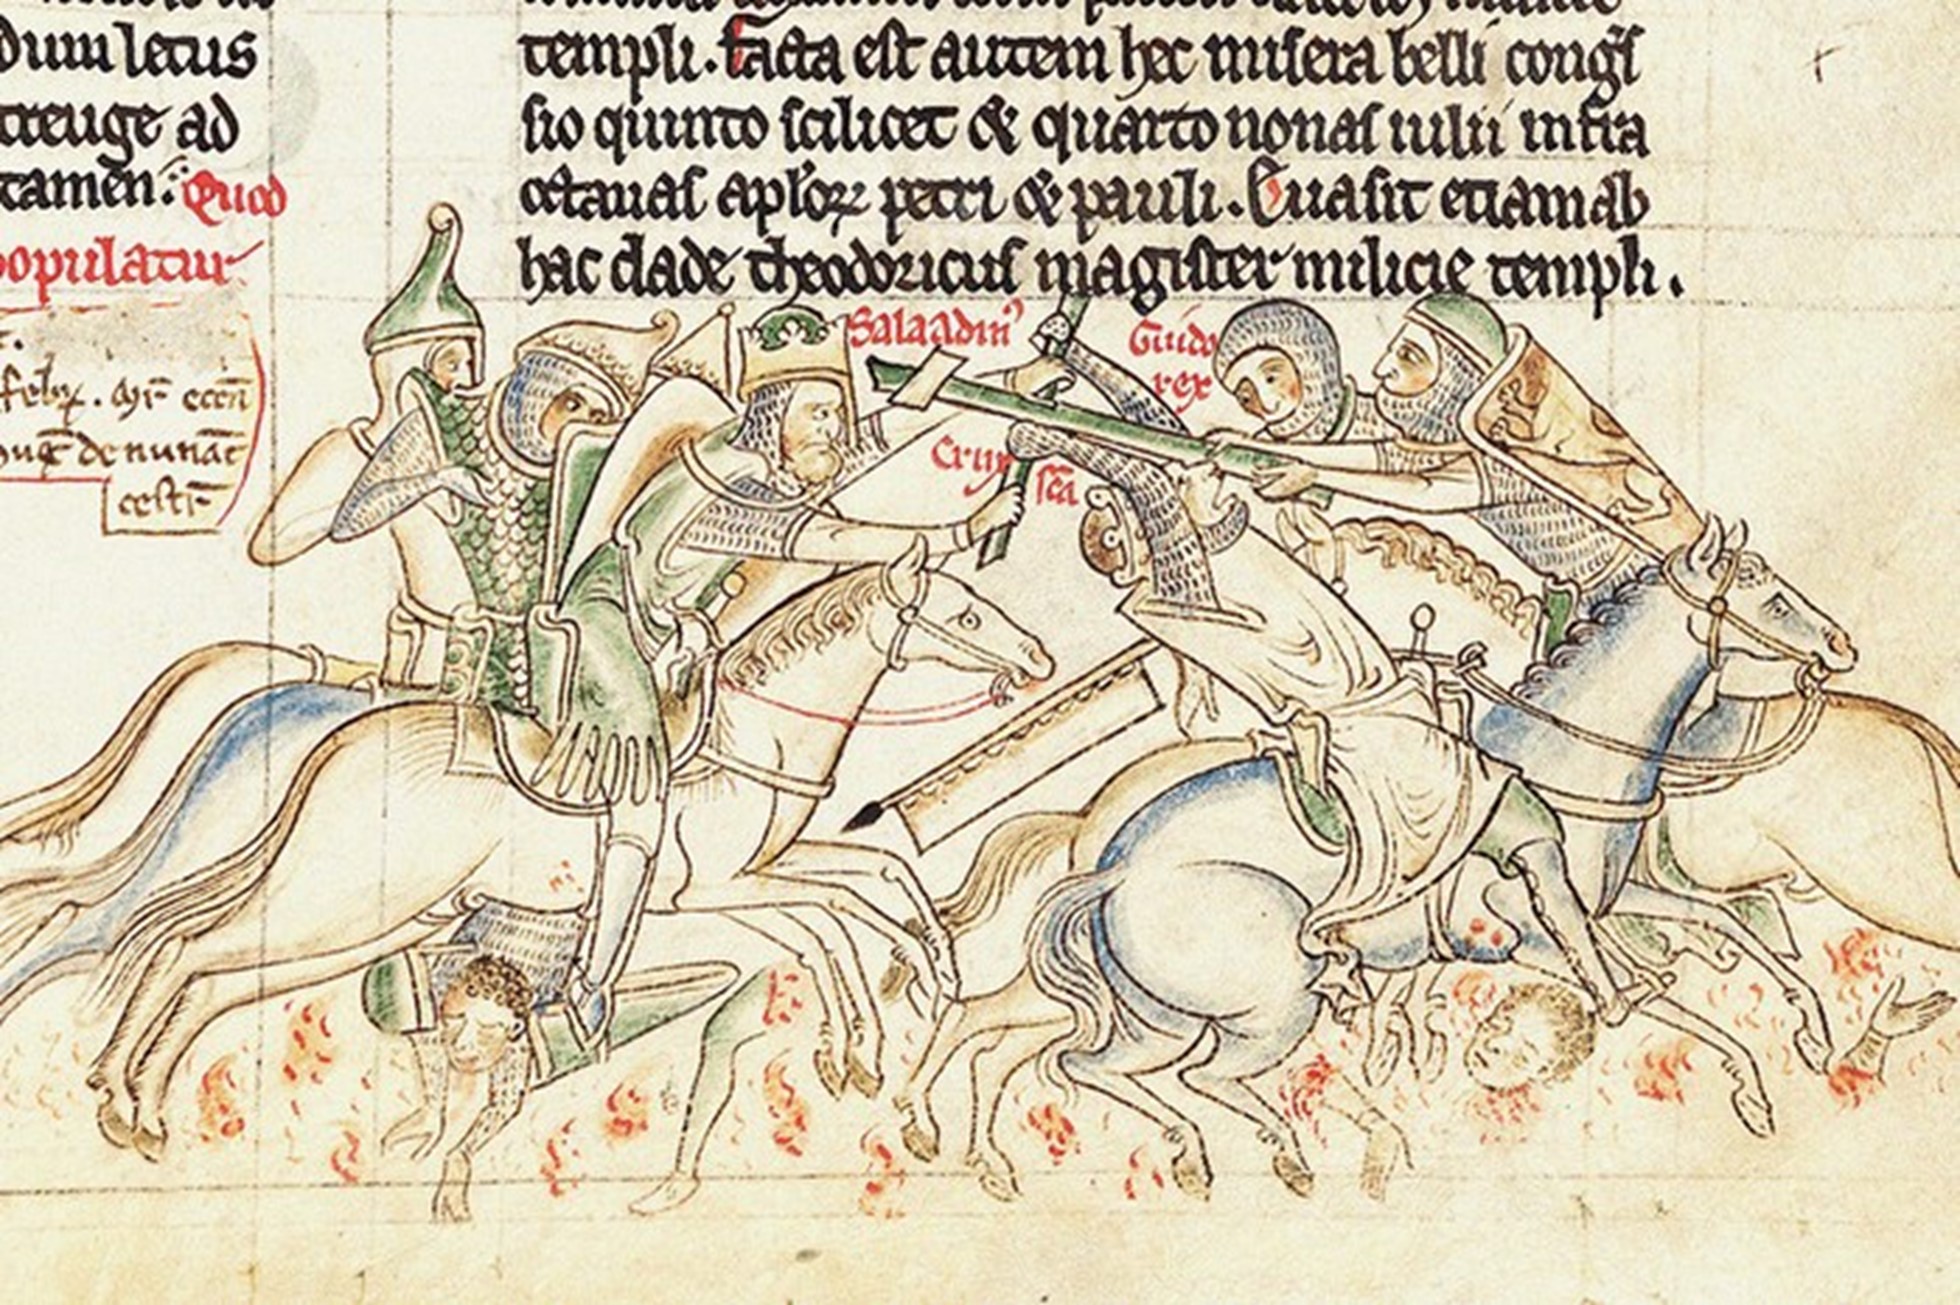 Saladin capturează "adevărata cruce" în bătălia de la Hattin din 4 iulie 1187, reprezentată într-o ilustrație medievală. În urma triumfului său din confruntarea împotriva cruciaților, sultanul a capturat orașul sfânt Ierusalim în octombrie 1187